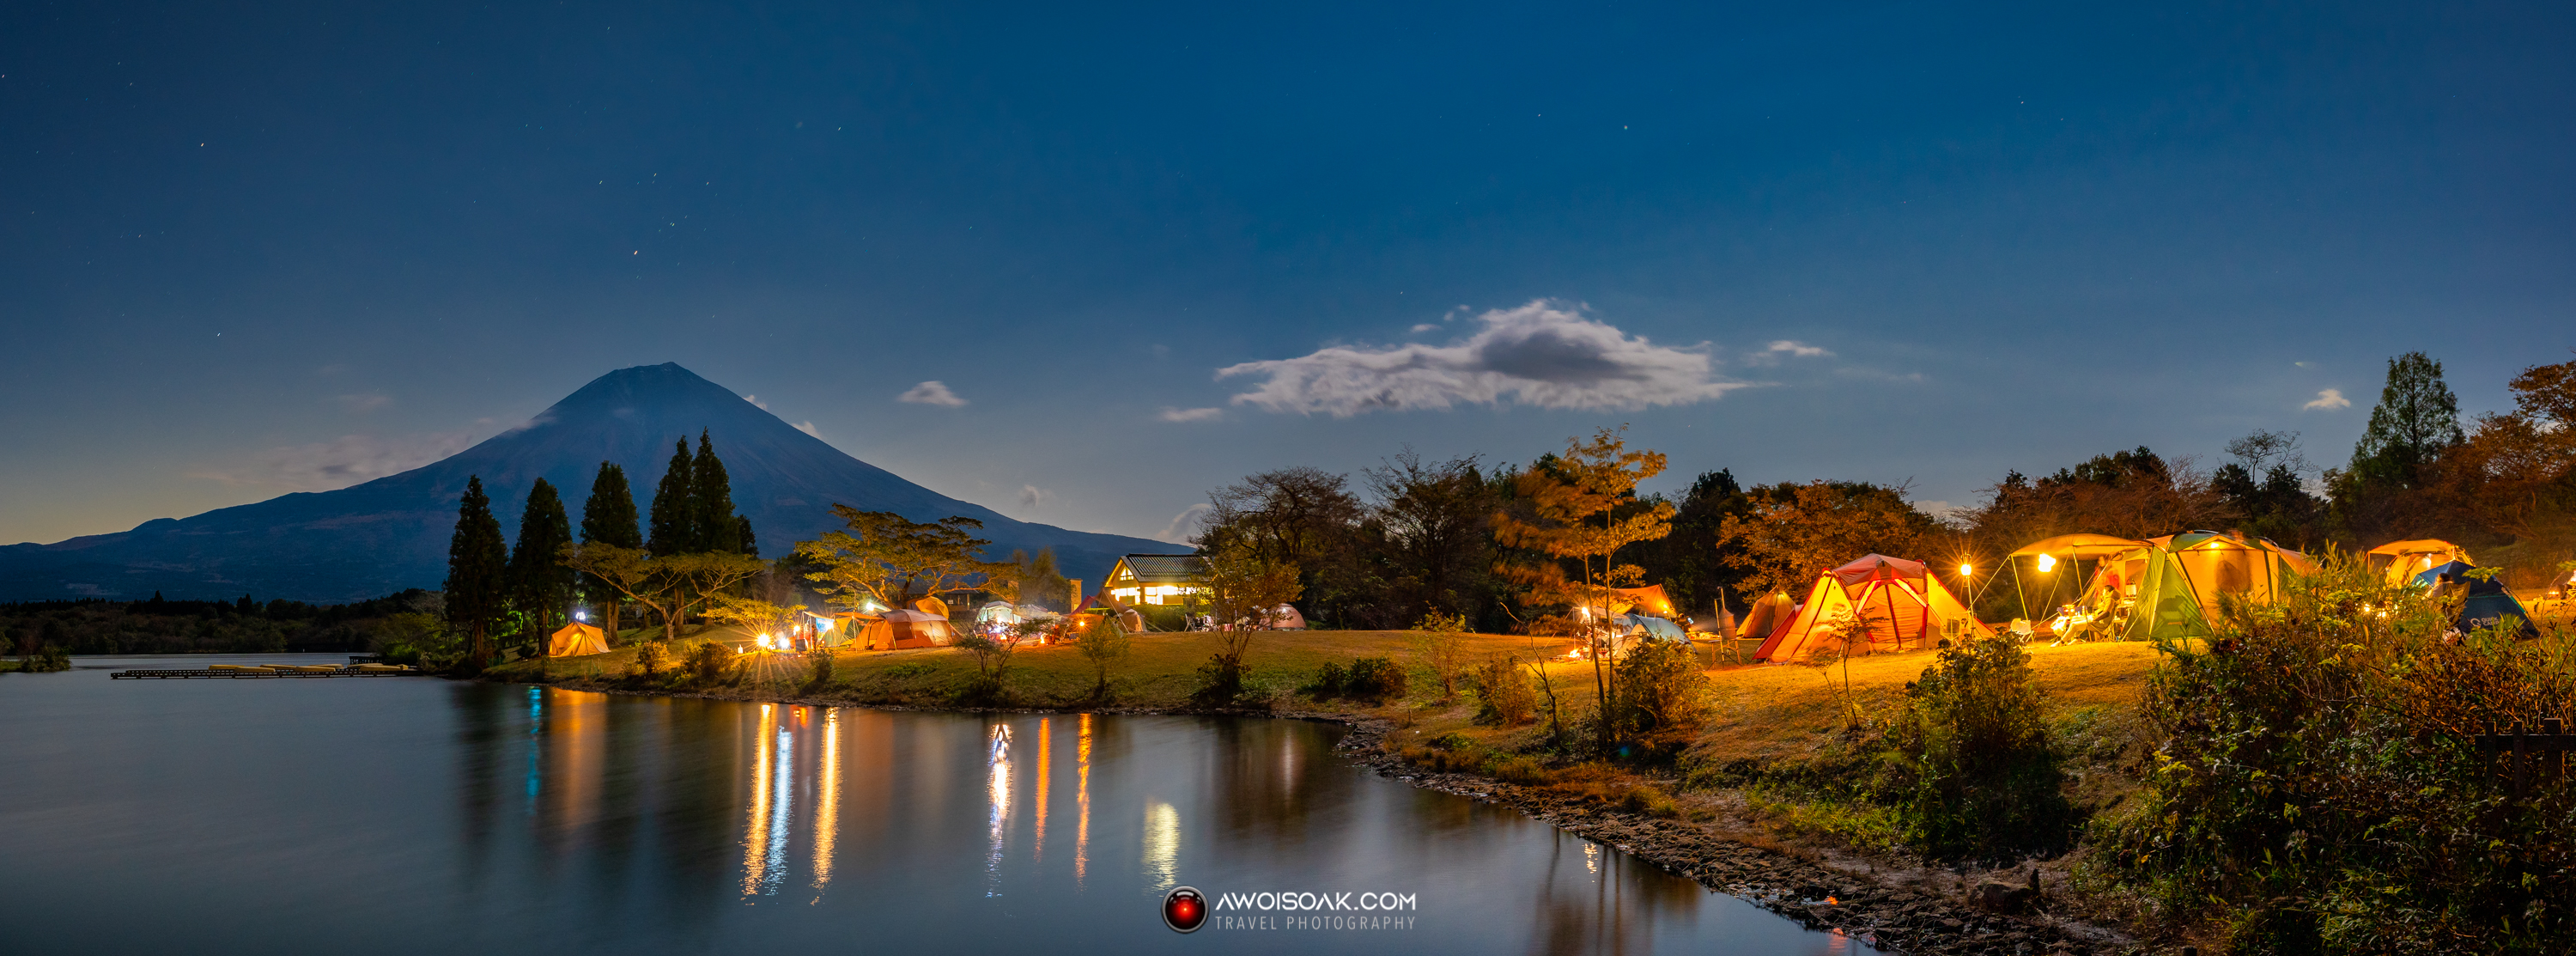 Camping next to Mount Fuji in Lake Tanuki